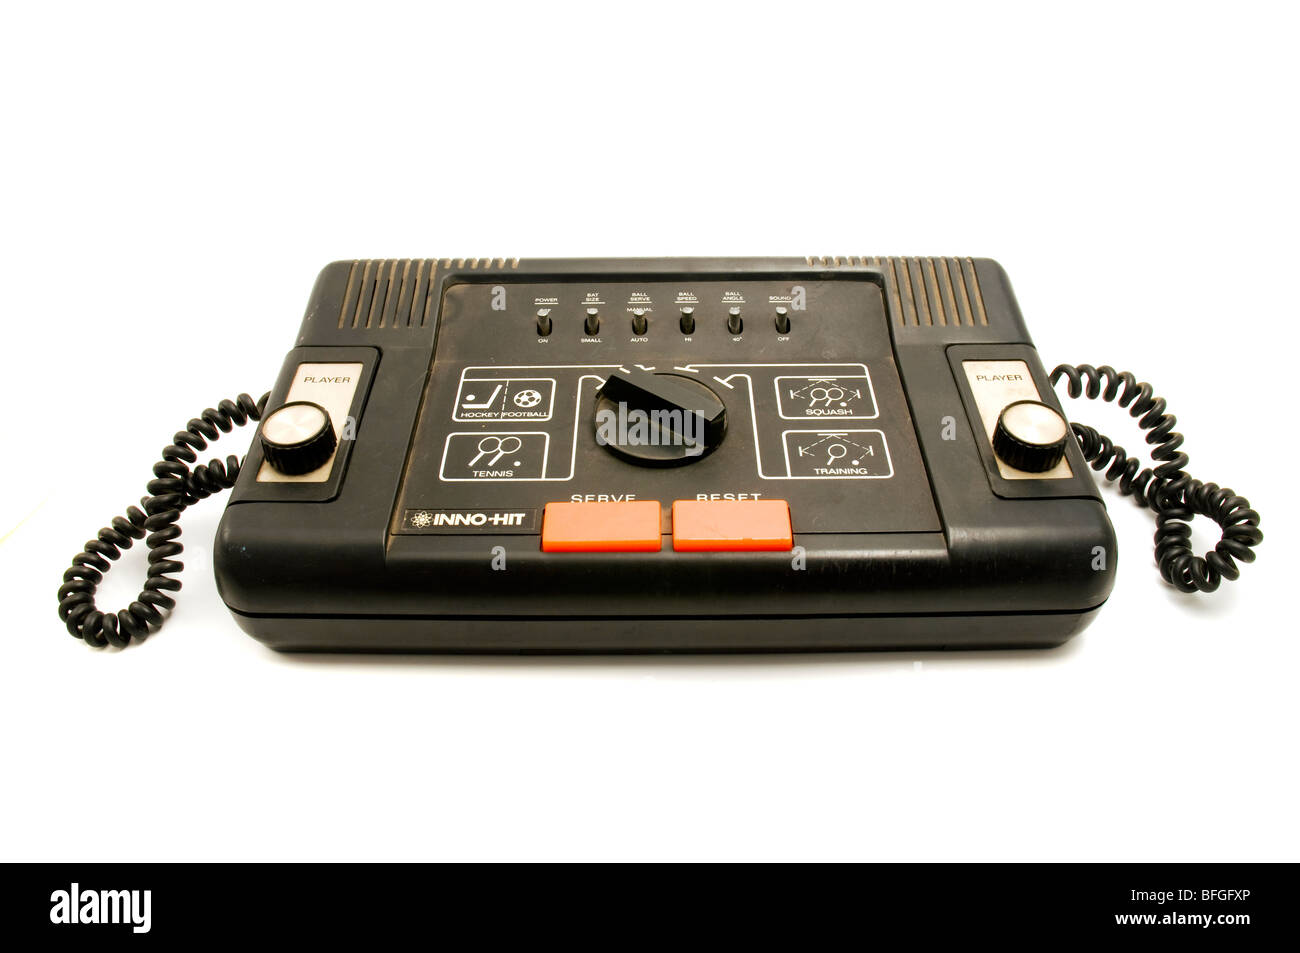 Original Inno-hit sportron gt-retro videogame console Stock Photo